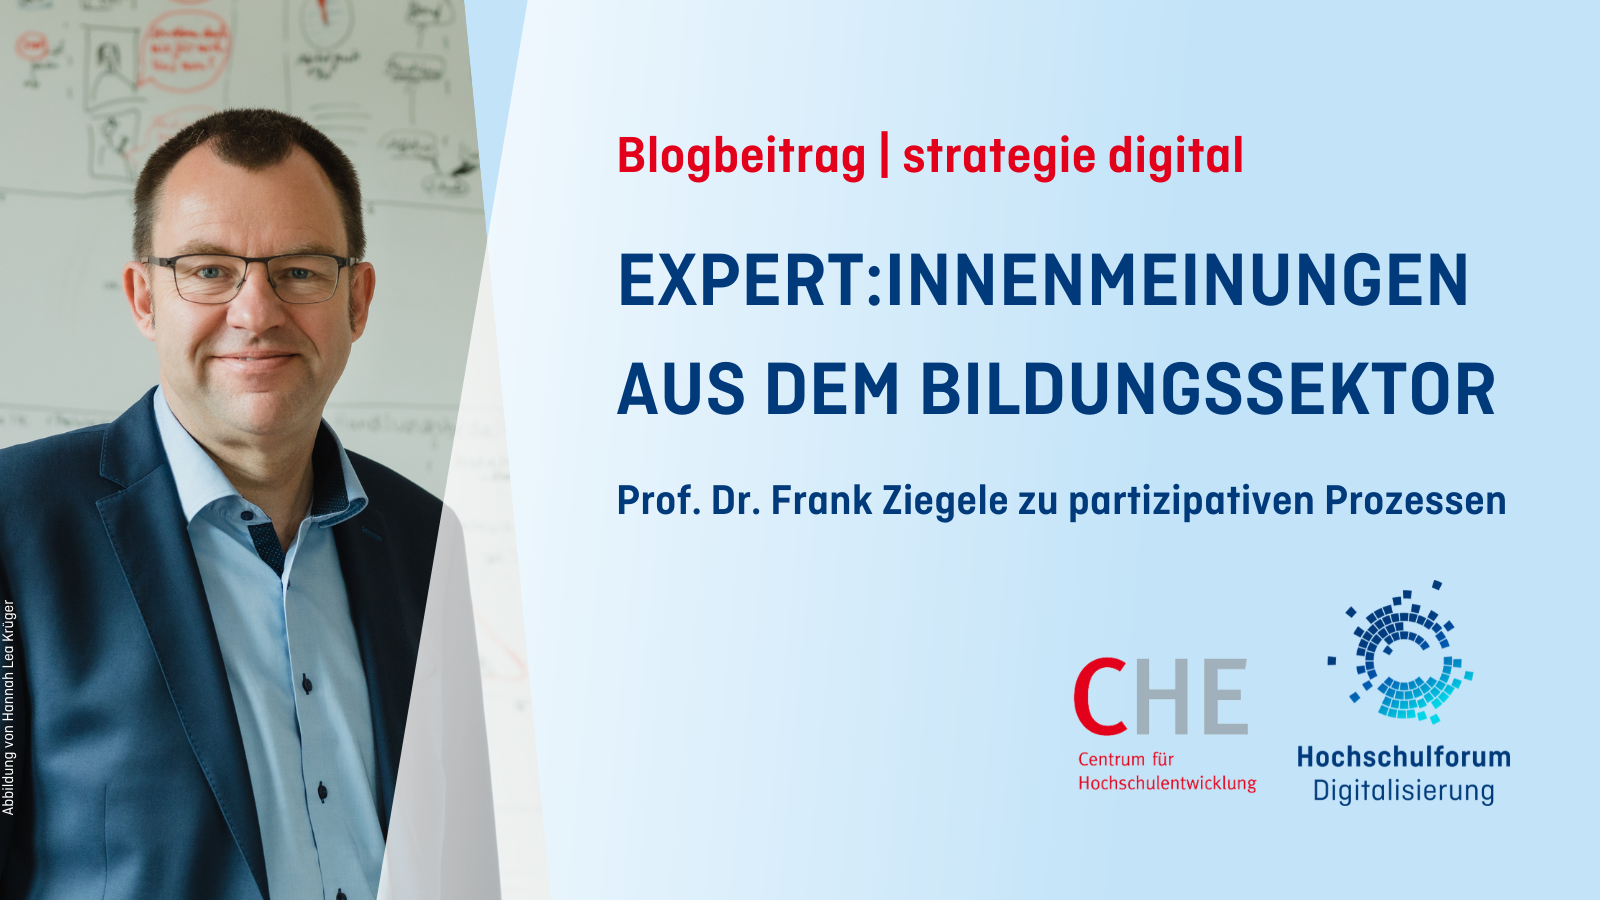 Titelbild zum Beitrag aus der 3. Ausgabe des HFD-Magazins "strategie digital" von Prof. Dr. Frank Ziegele: Partizipation – EXPERT:INNENMEINUNGEN AUS DEM BILDUNGSSEKTOR. Logo: Hochschulforum Digitalisierung.